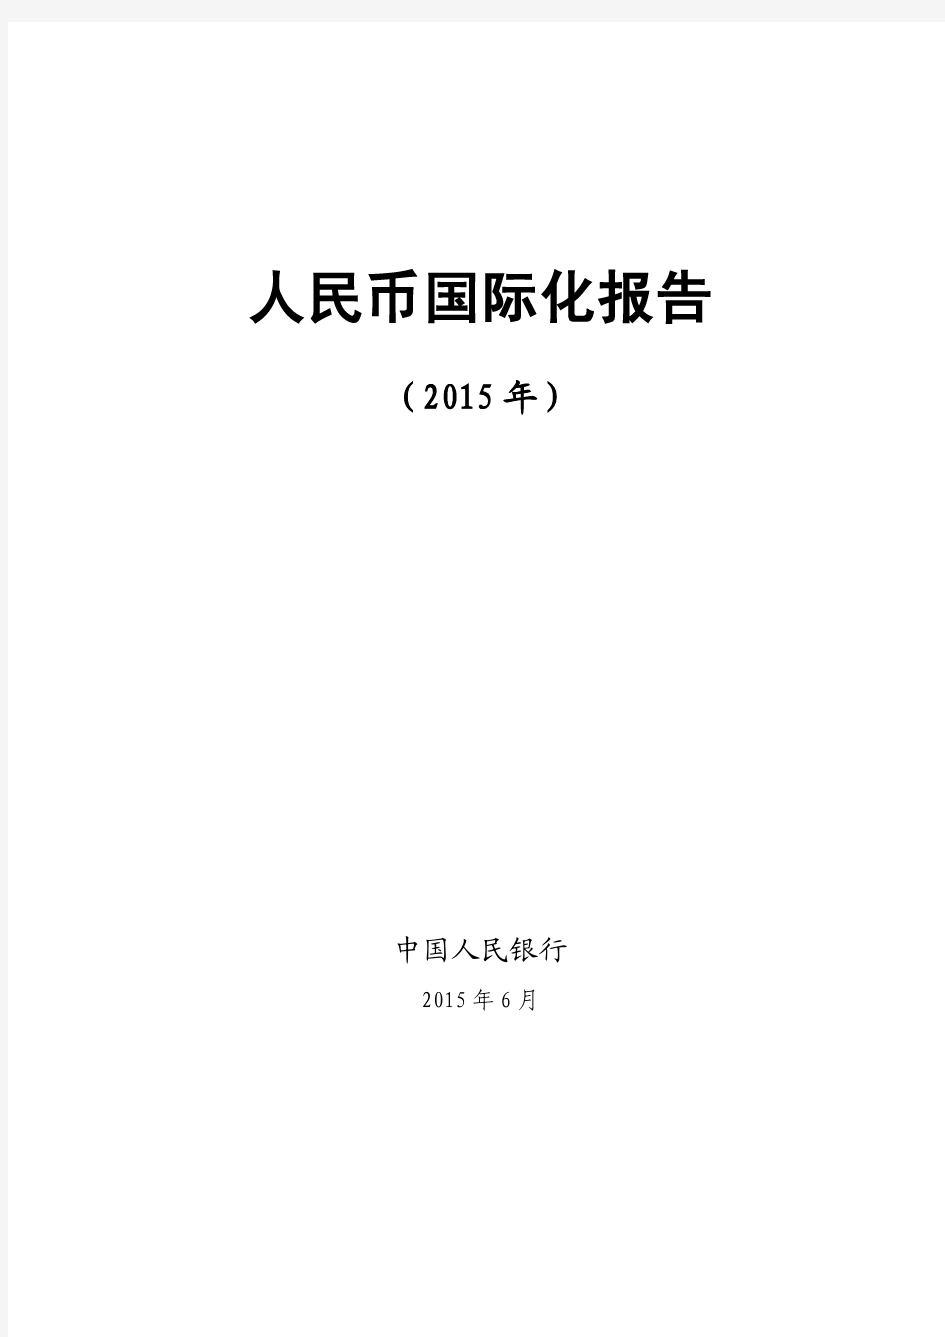 人民币国际化报告(2015年),中国人民银行